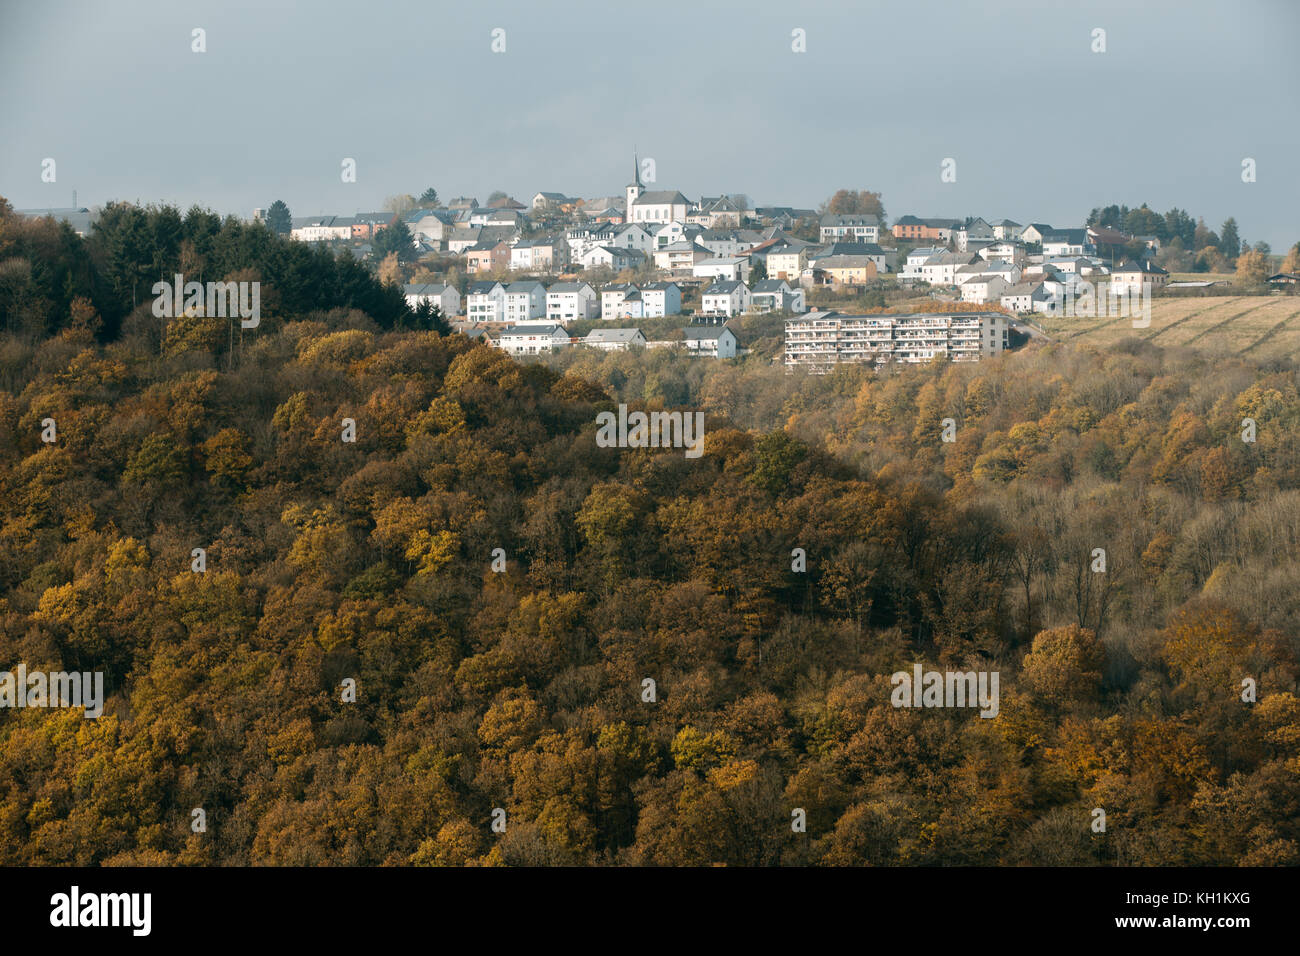 Village de bourscheid sur la colline aux couleurs de l'automne Banque D'Images